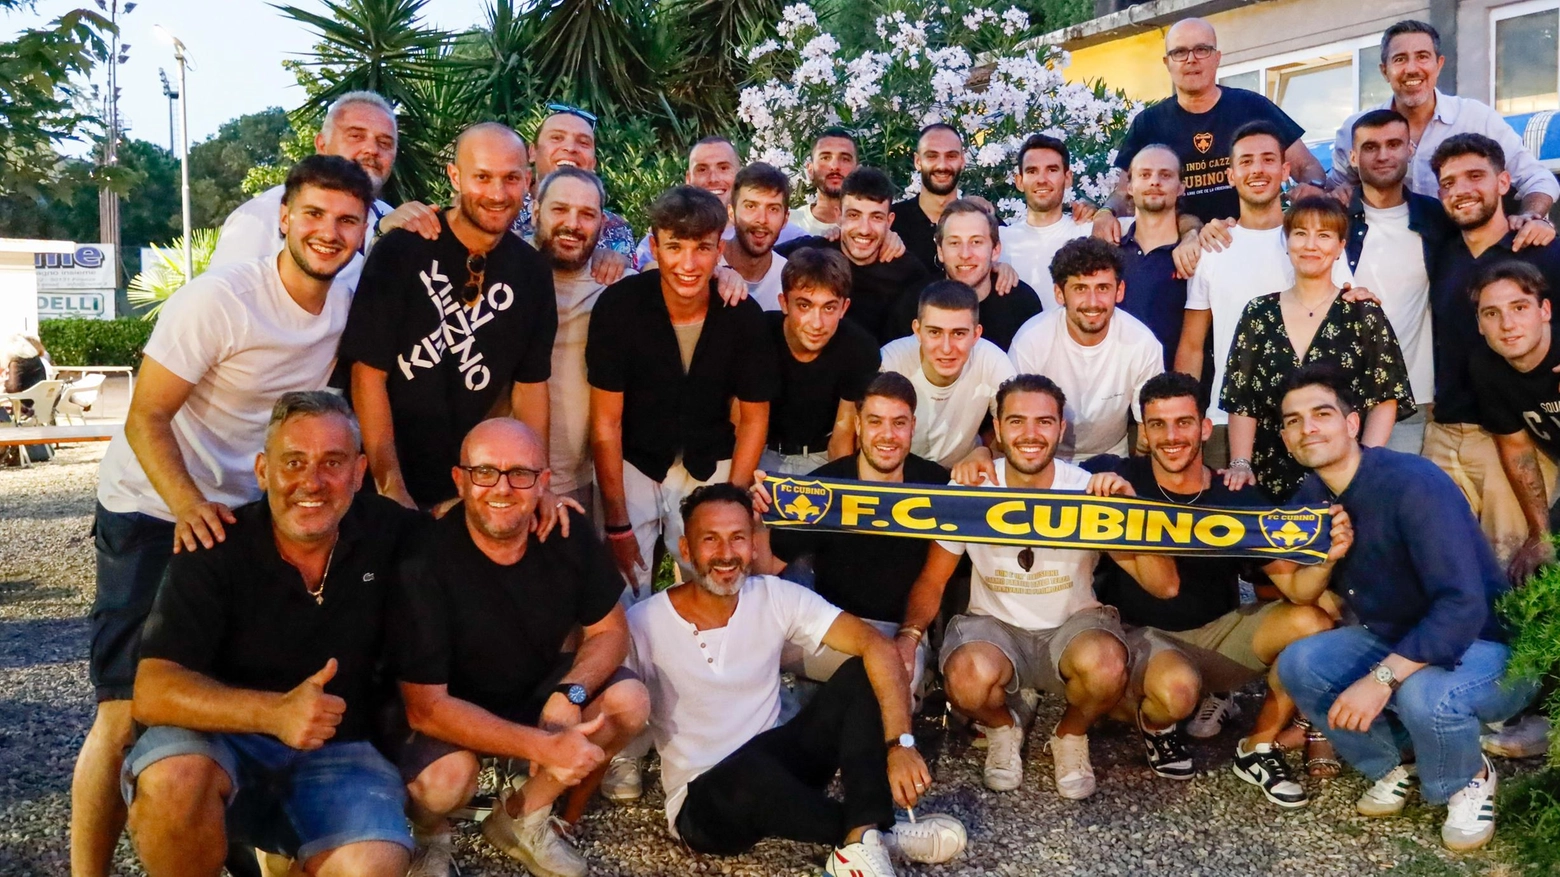 Il Cubino, fresco vincitore del campionato di Promozione, si prepara per la nuova stagione con nuovi arrivi e un obiettivo chiaro: difendere il titolo di categoria. Lo staff tecnico si rinnova per affrontare le sfide che verranno.